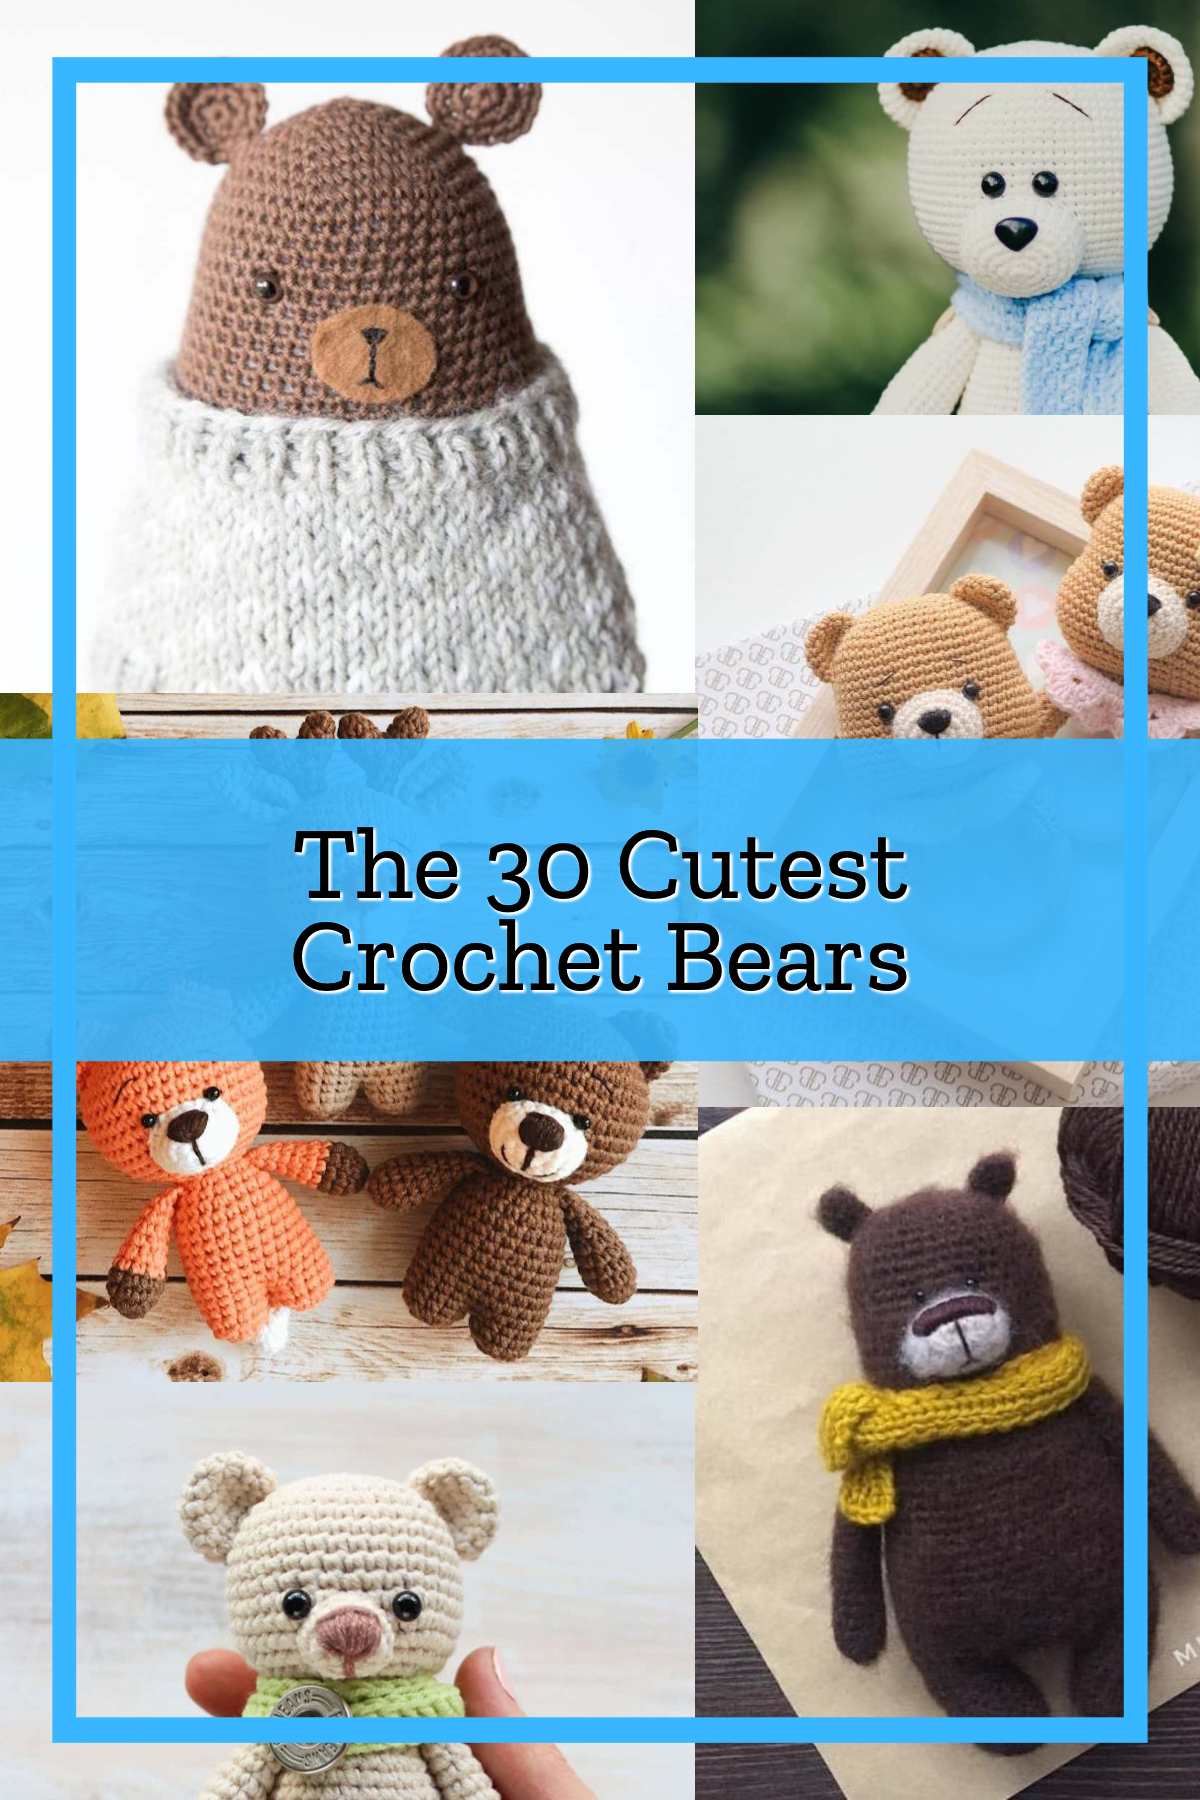 The 30 Cutest Crochet Bear Patterns